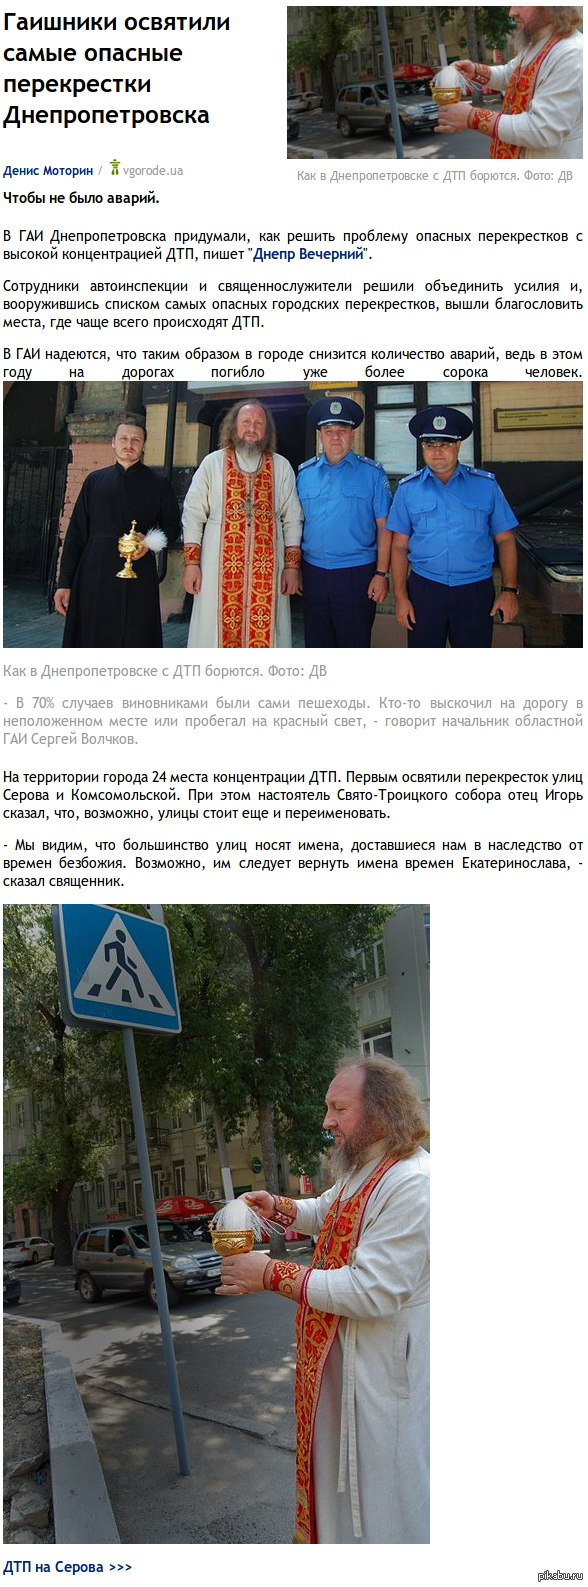              http://dp.vgorode.ua/news/176826-hayshnyky-osviatyly-samye-opasnye-perekrestky-dnepropetrovska